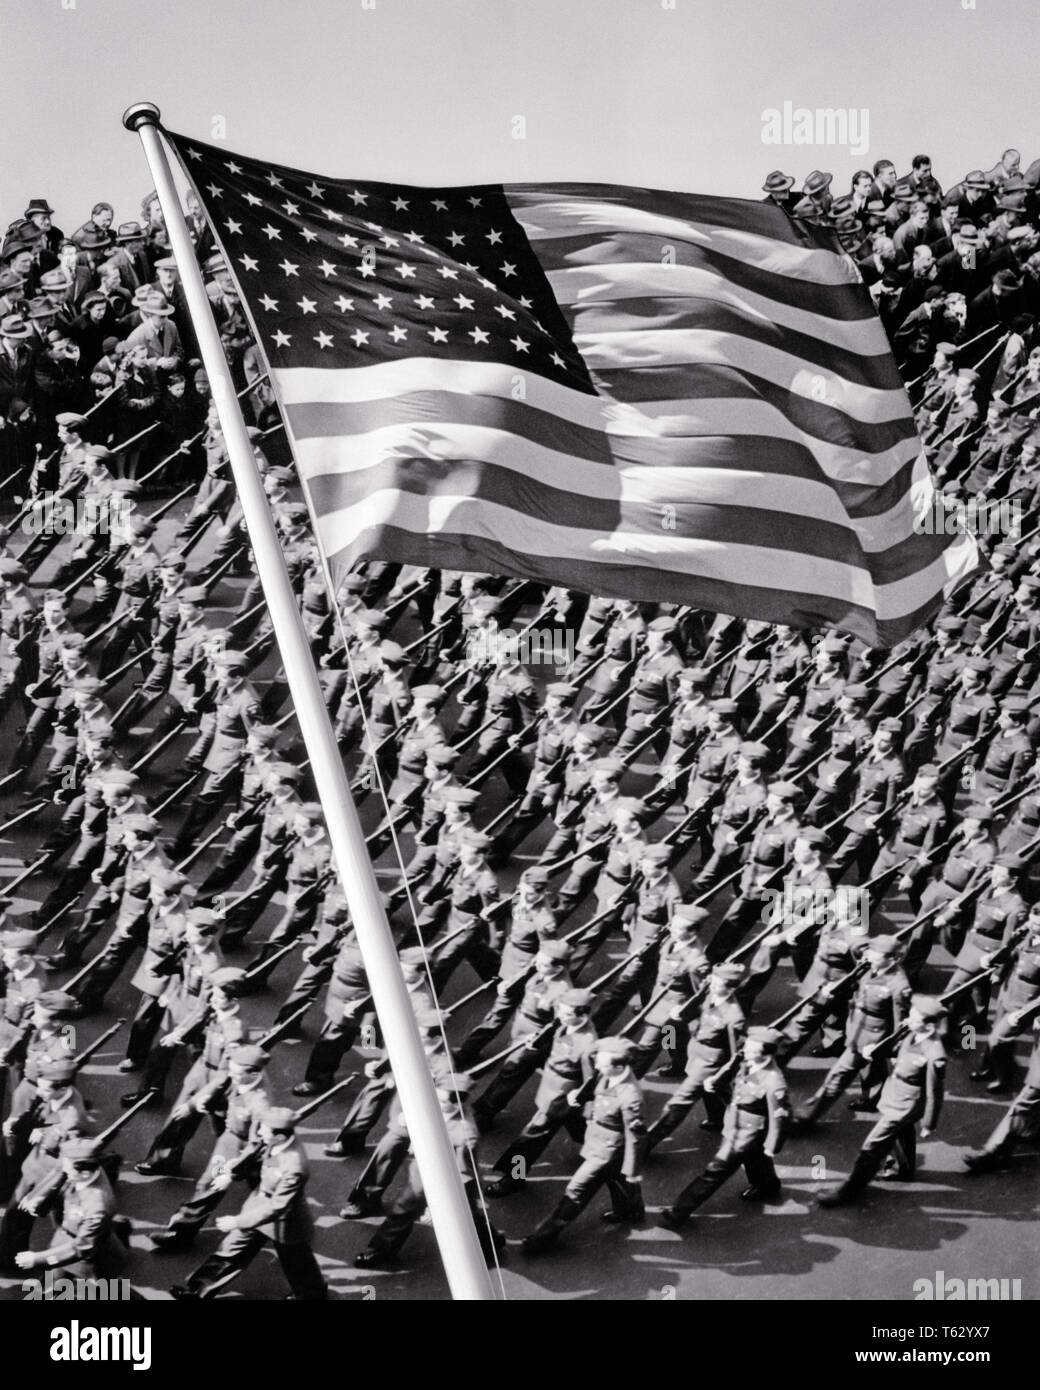 1940, PATRÓN DE LA CIUDAD DE NUEVA YORK hombres marchando tropas con bandera de EE.UU. 48 estrellas superpuestas en primer plano - q42140 CPC001 HARS ESPIRITUALIDAD B&W LIBERTAD éxito ángulo alto fuerza victoria valentía emoción liderazgo potente GOTHAM GUERRAS MUNDIALES DIRECCIÓN ORGULLO GUERRA MUNDIAL LA SEGUNDA GUERRA MUNDIAL LA II GUERRA MUNDIAL EN NYC ocupaciones de autoridad política tropas uniformes elegantes ciudades NUEVA YORK CONCEPTUAL DE LA II GUERRA MUNDIAL 48 ESTRELLAS DE HONOR DE LA CIUDAD DE NUEVA YORK PRECISION ROJO BLANCO Y AZUL, LAS ESTRELLAS Y LAS TIRAS EN BLANCO Y NEGRO LUGARES DE PRIMER PLANO superpuesto a la antigua usanza Foto de stock